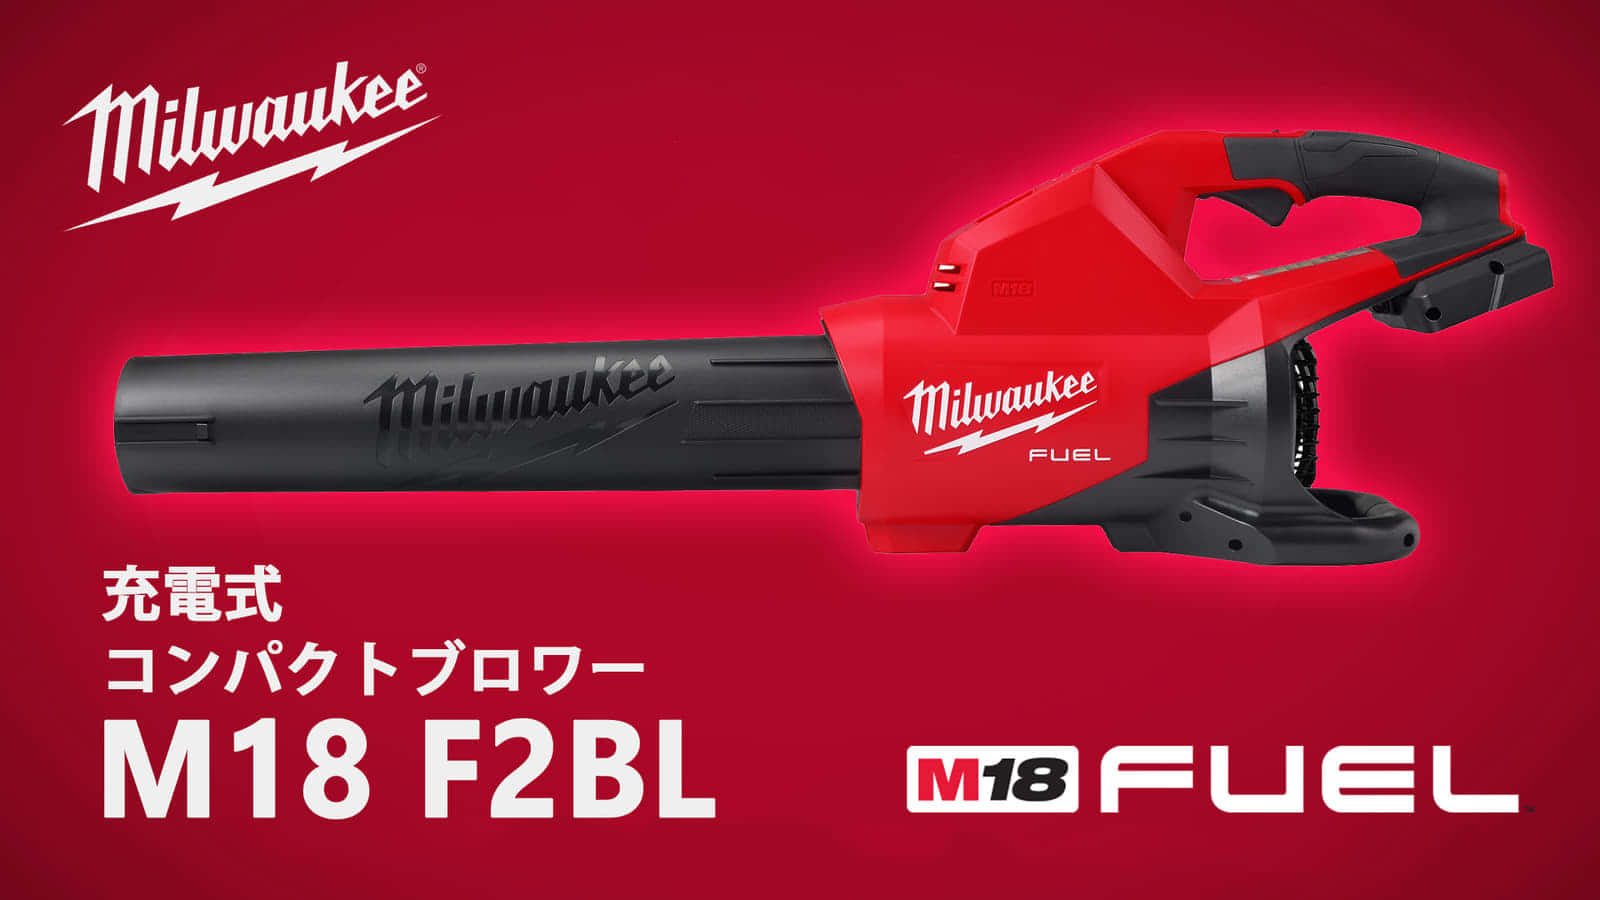 ミルウォーキー M18 F2BL ダブルバッテリーブロワーを発売、バッテリ2本装着のハイパワーブロワ